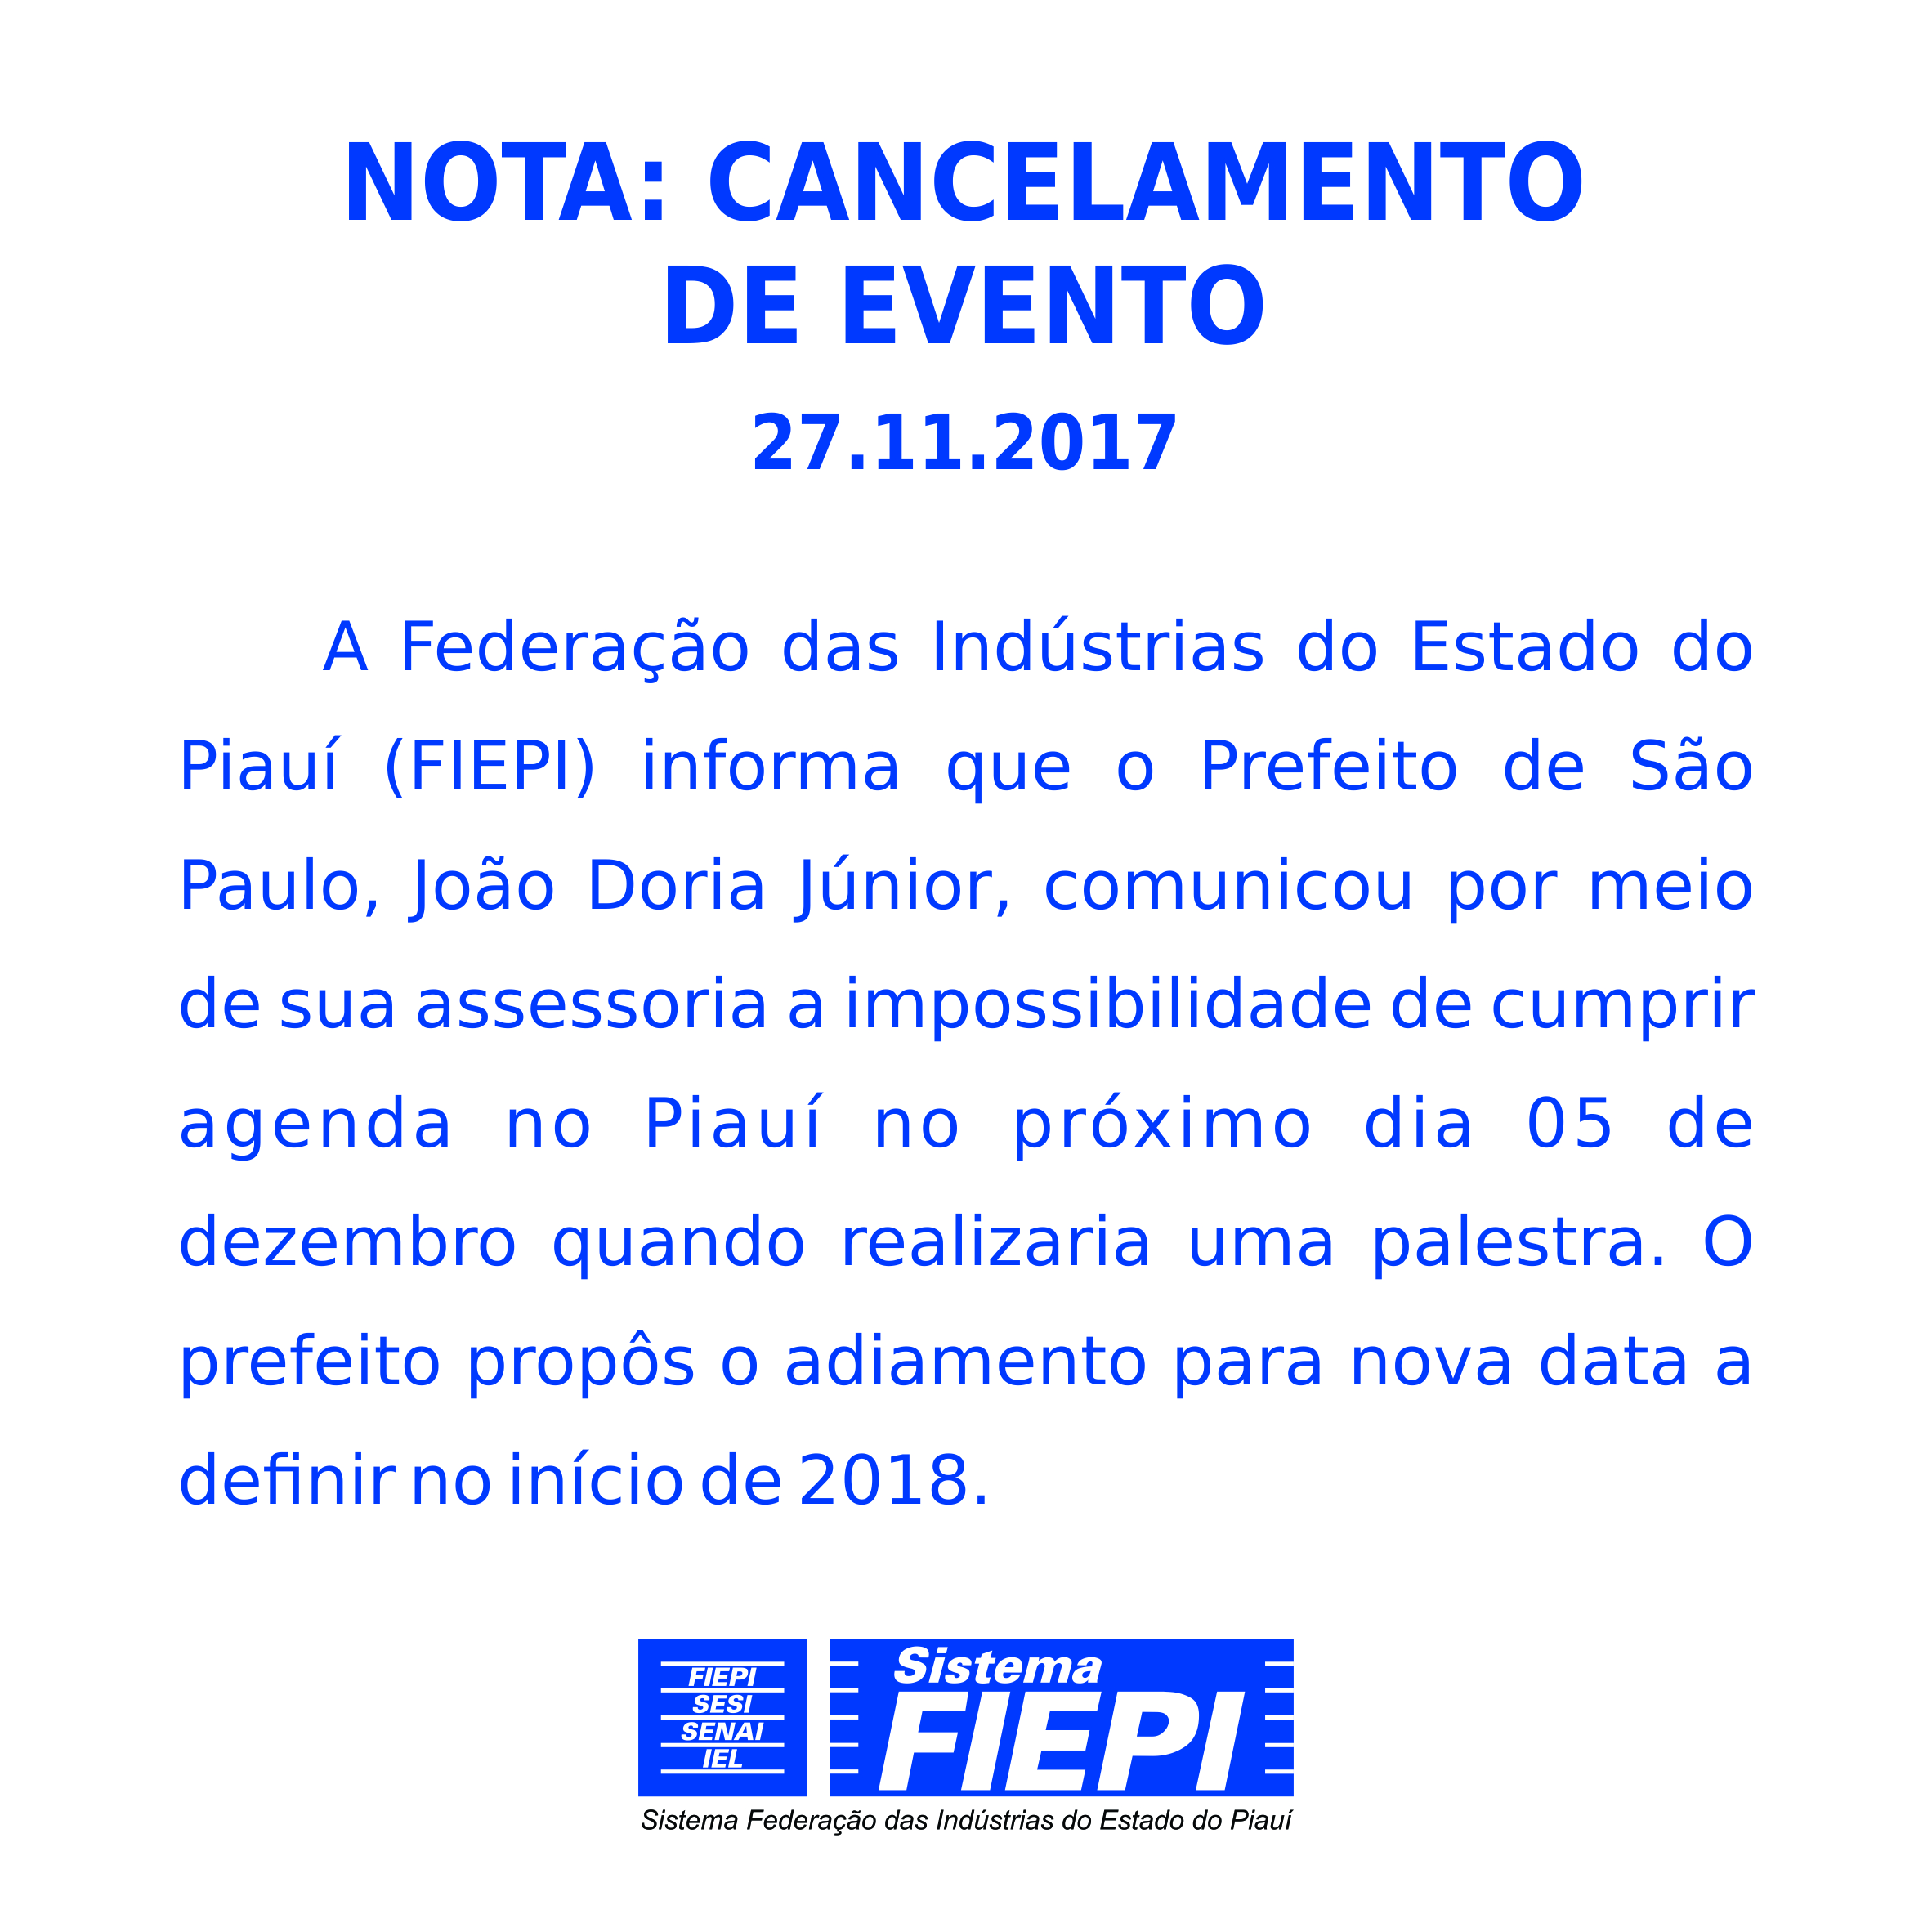 Prefeito João Dória Júnior cancela agenda no estado do Piauí